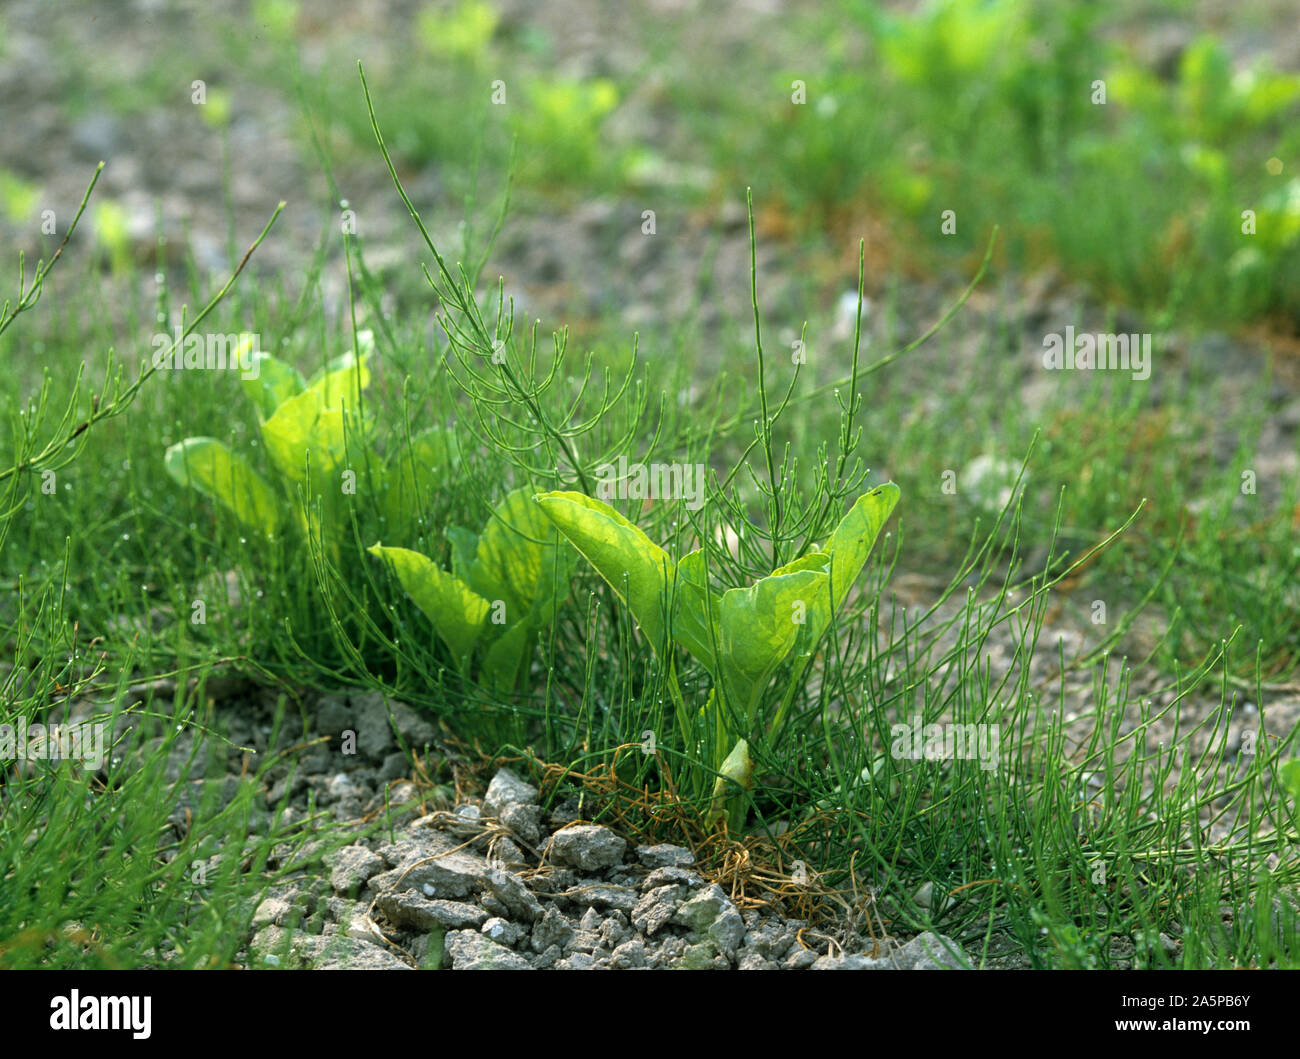 La prêle (Equisetum arvense) jeunes plantes dans une récolte de betteraves à sucre, France Banque D'Images